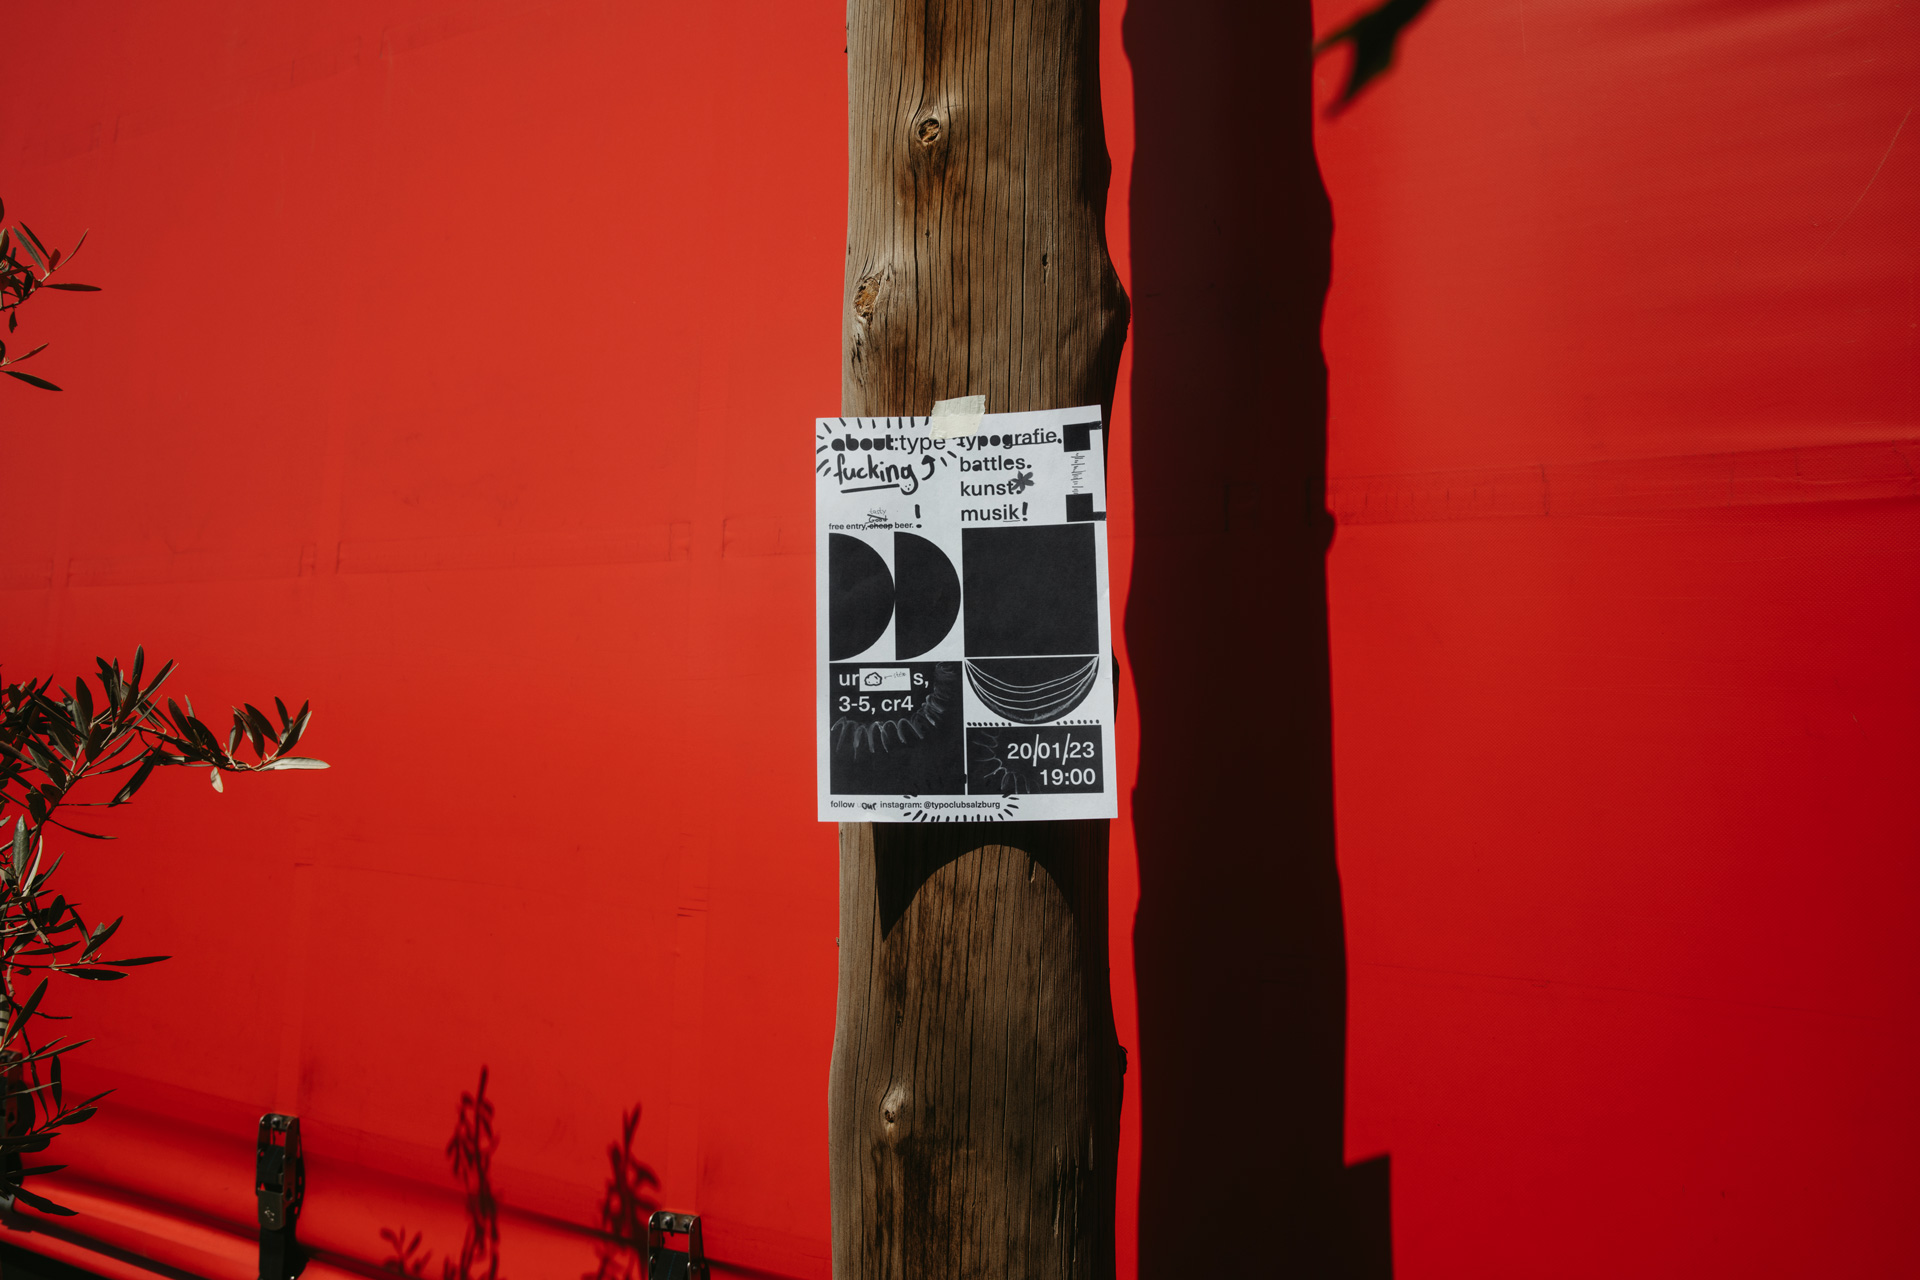 Analog und digital gestaltetes Plakat des Typoclub Salzburg auf einem Baumstamm vor einer roten Wand